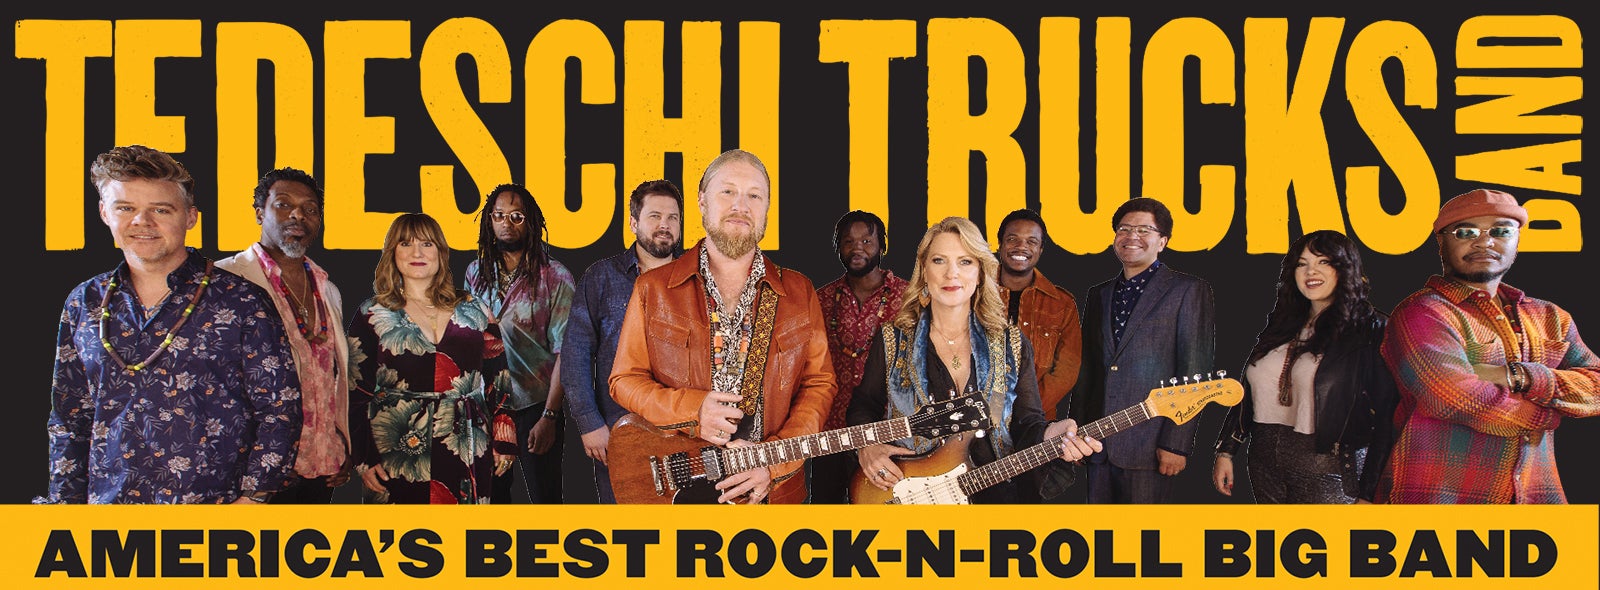 Tedeschi Trucks Band Dpac Official Site 